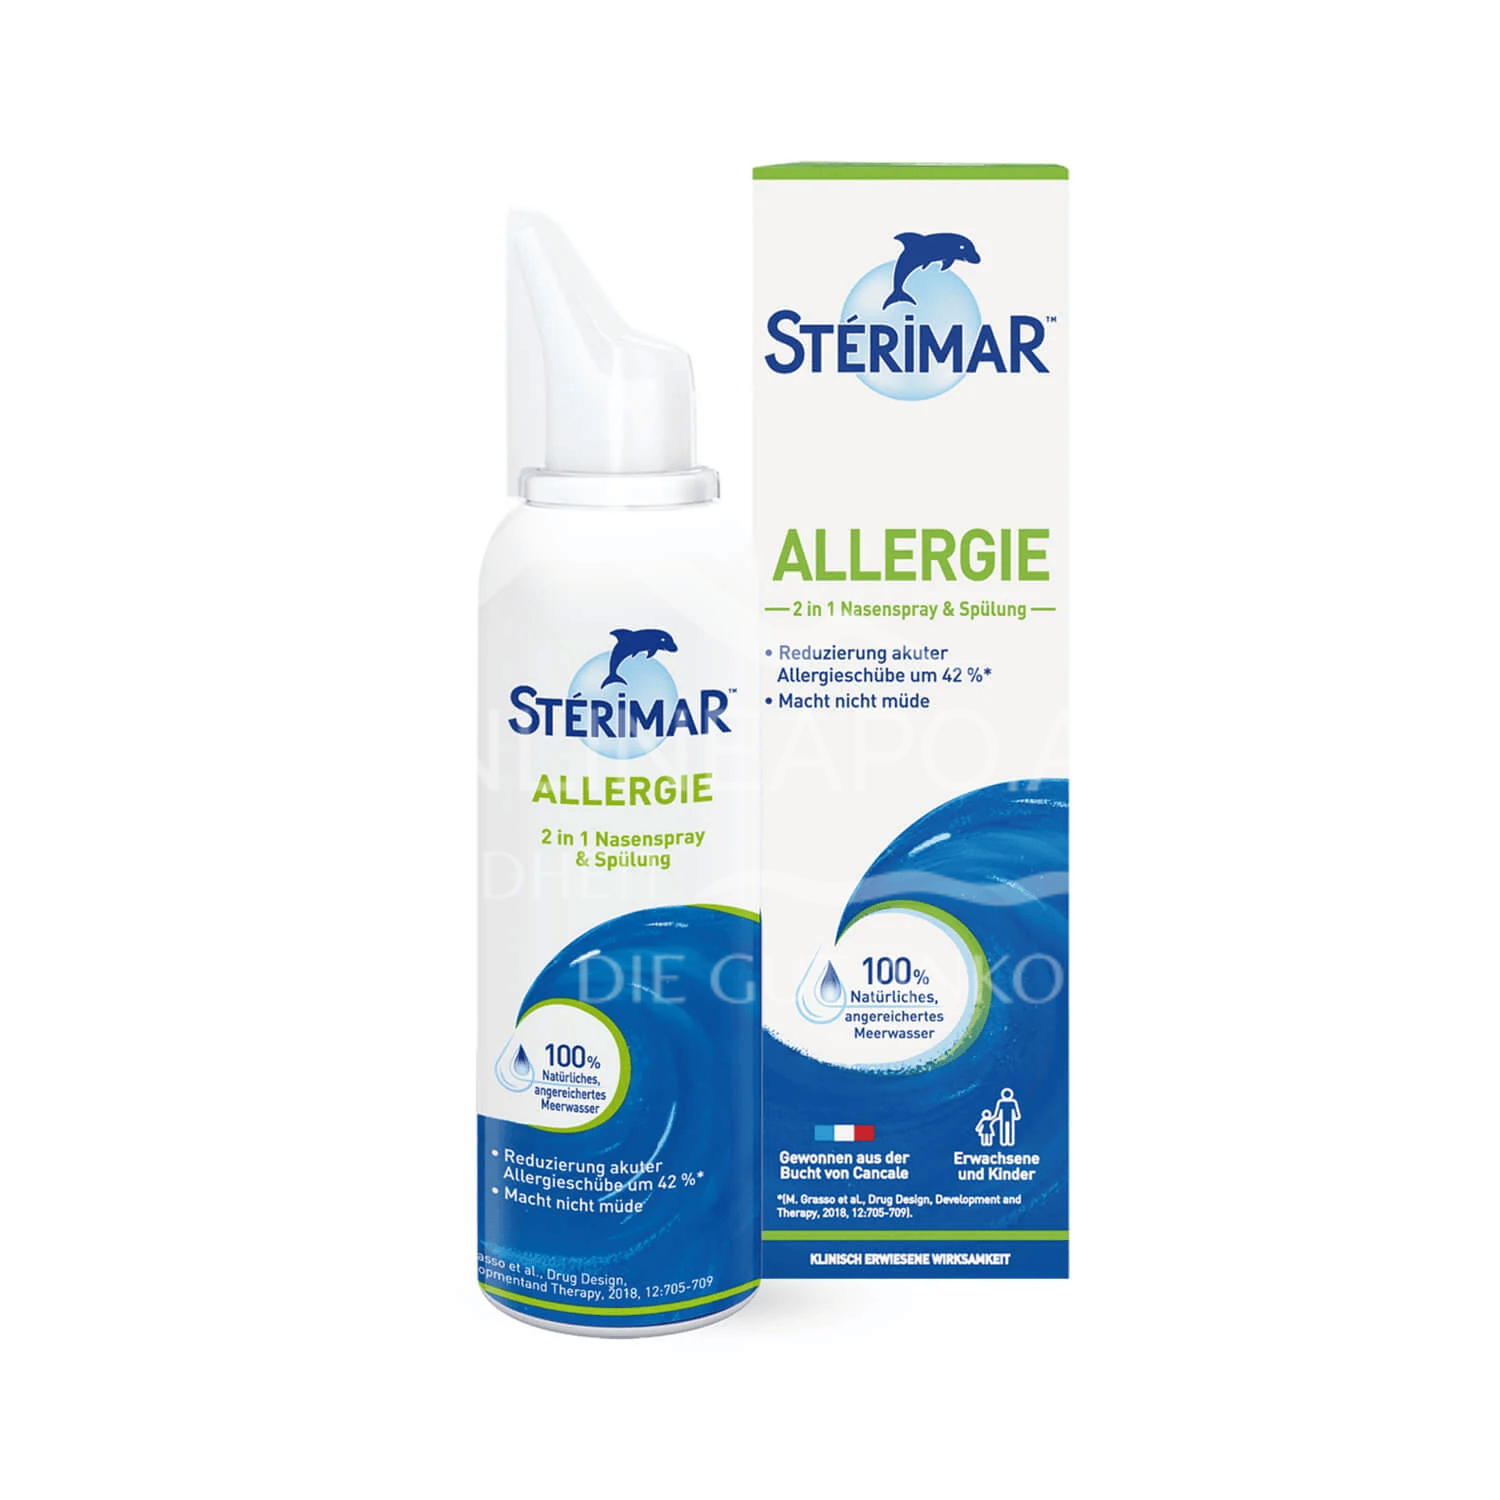 Sterimar Allergie 2 in 1 Nasenspray & Spülung